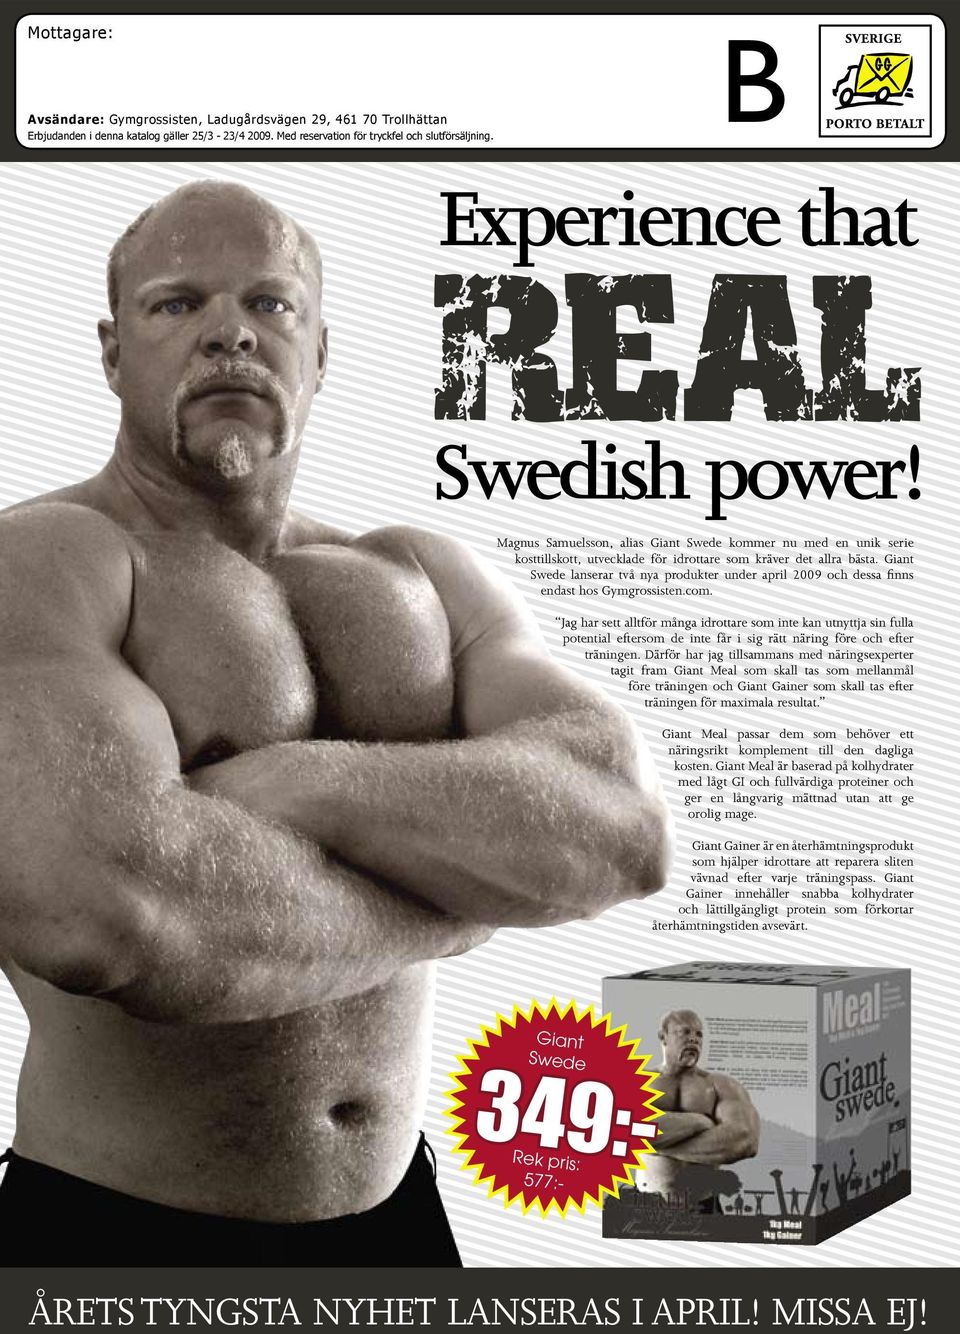 Giant Swede lanserar två nya produkter under april 2009 och dessa finns endast hos Gymgrossisten.com.